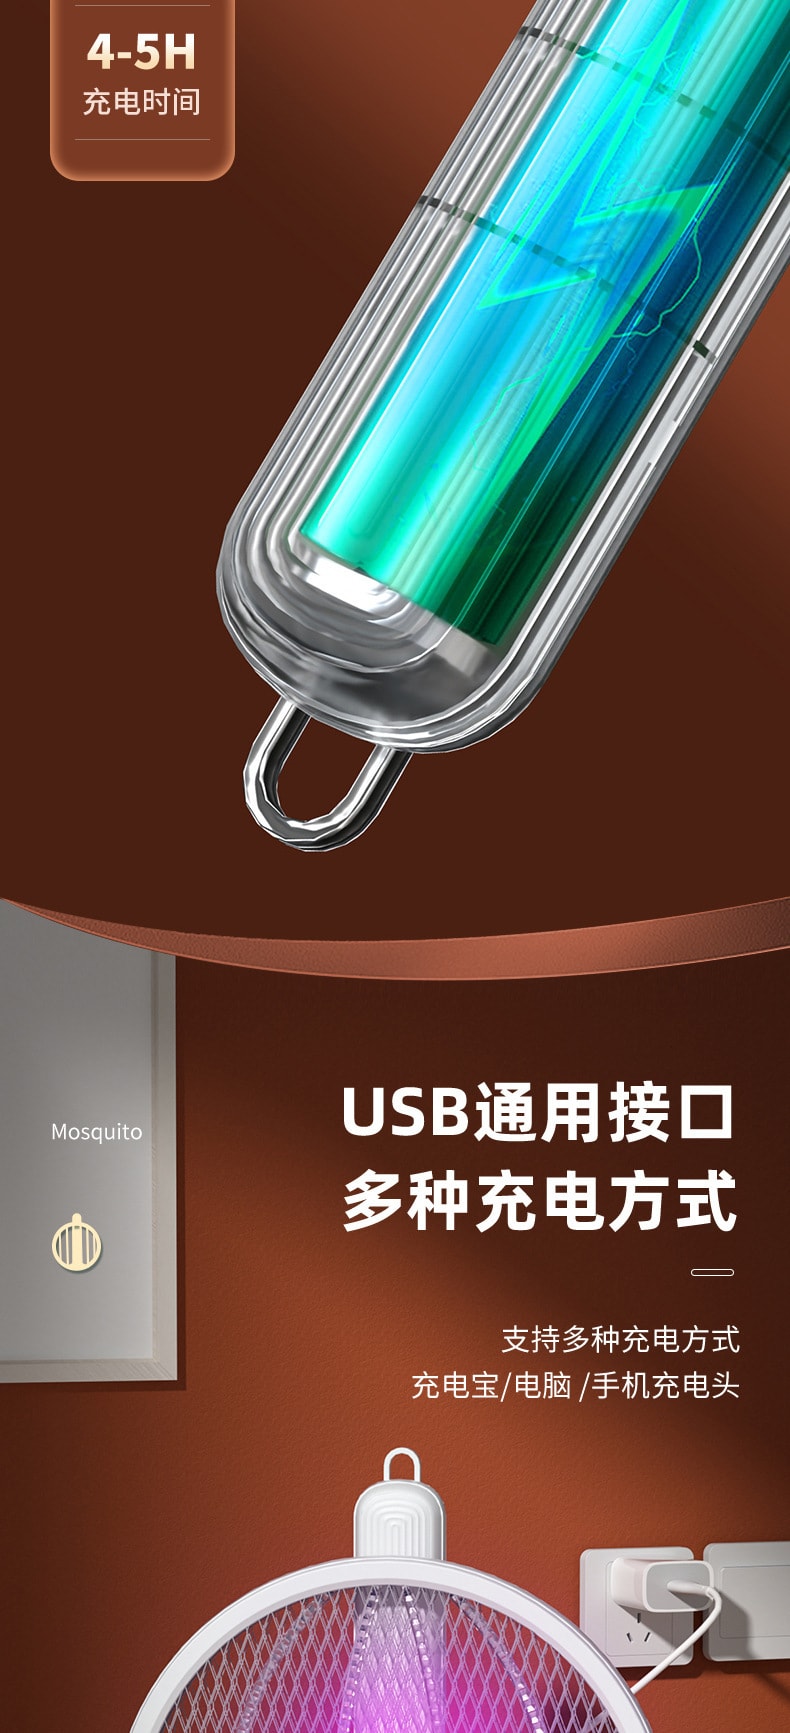 中國 電蚊拍 折疊驅蚊 貼合牆面USB 手持滅蚊拍+桌面驅蚊燈 1枚 白色